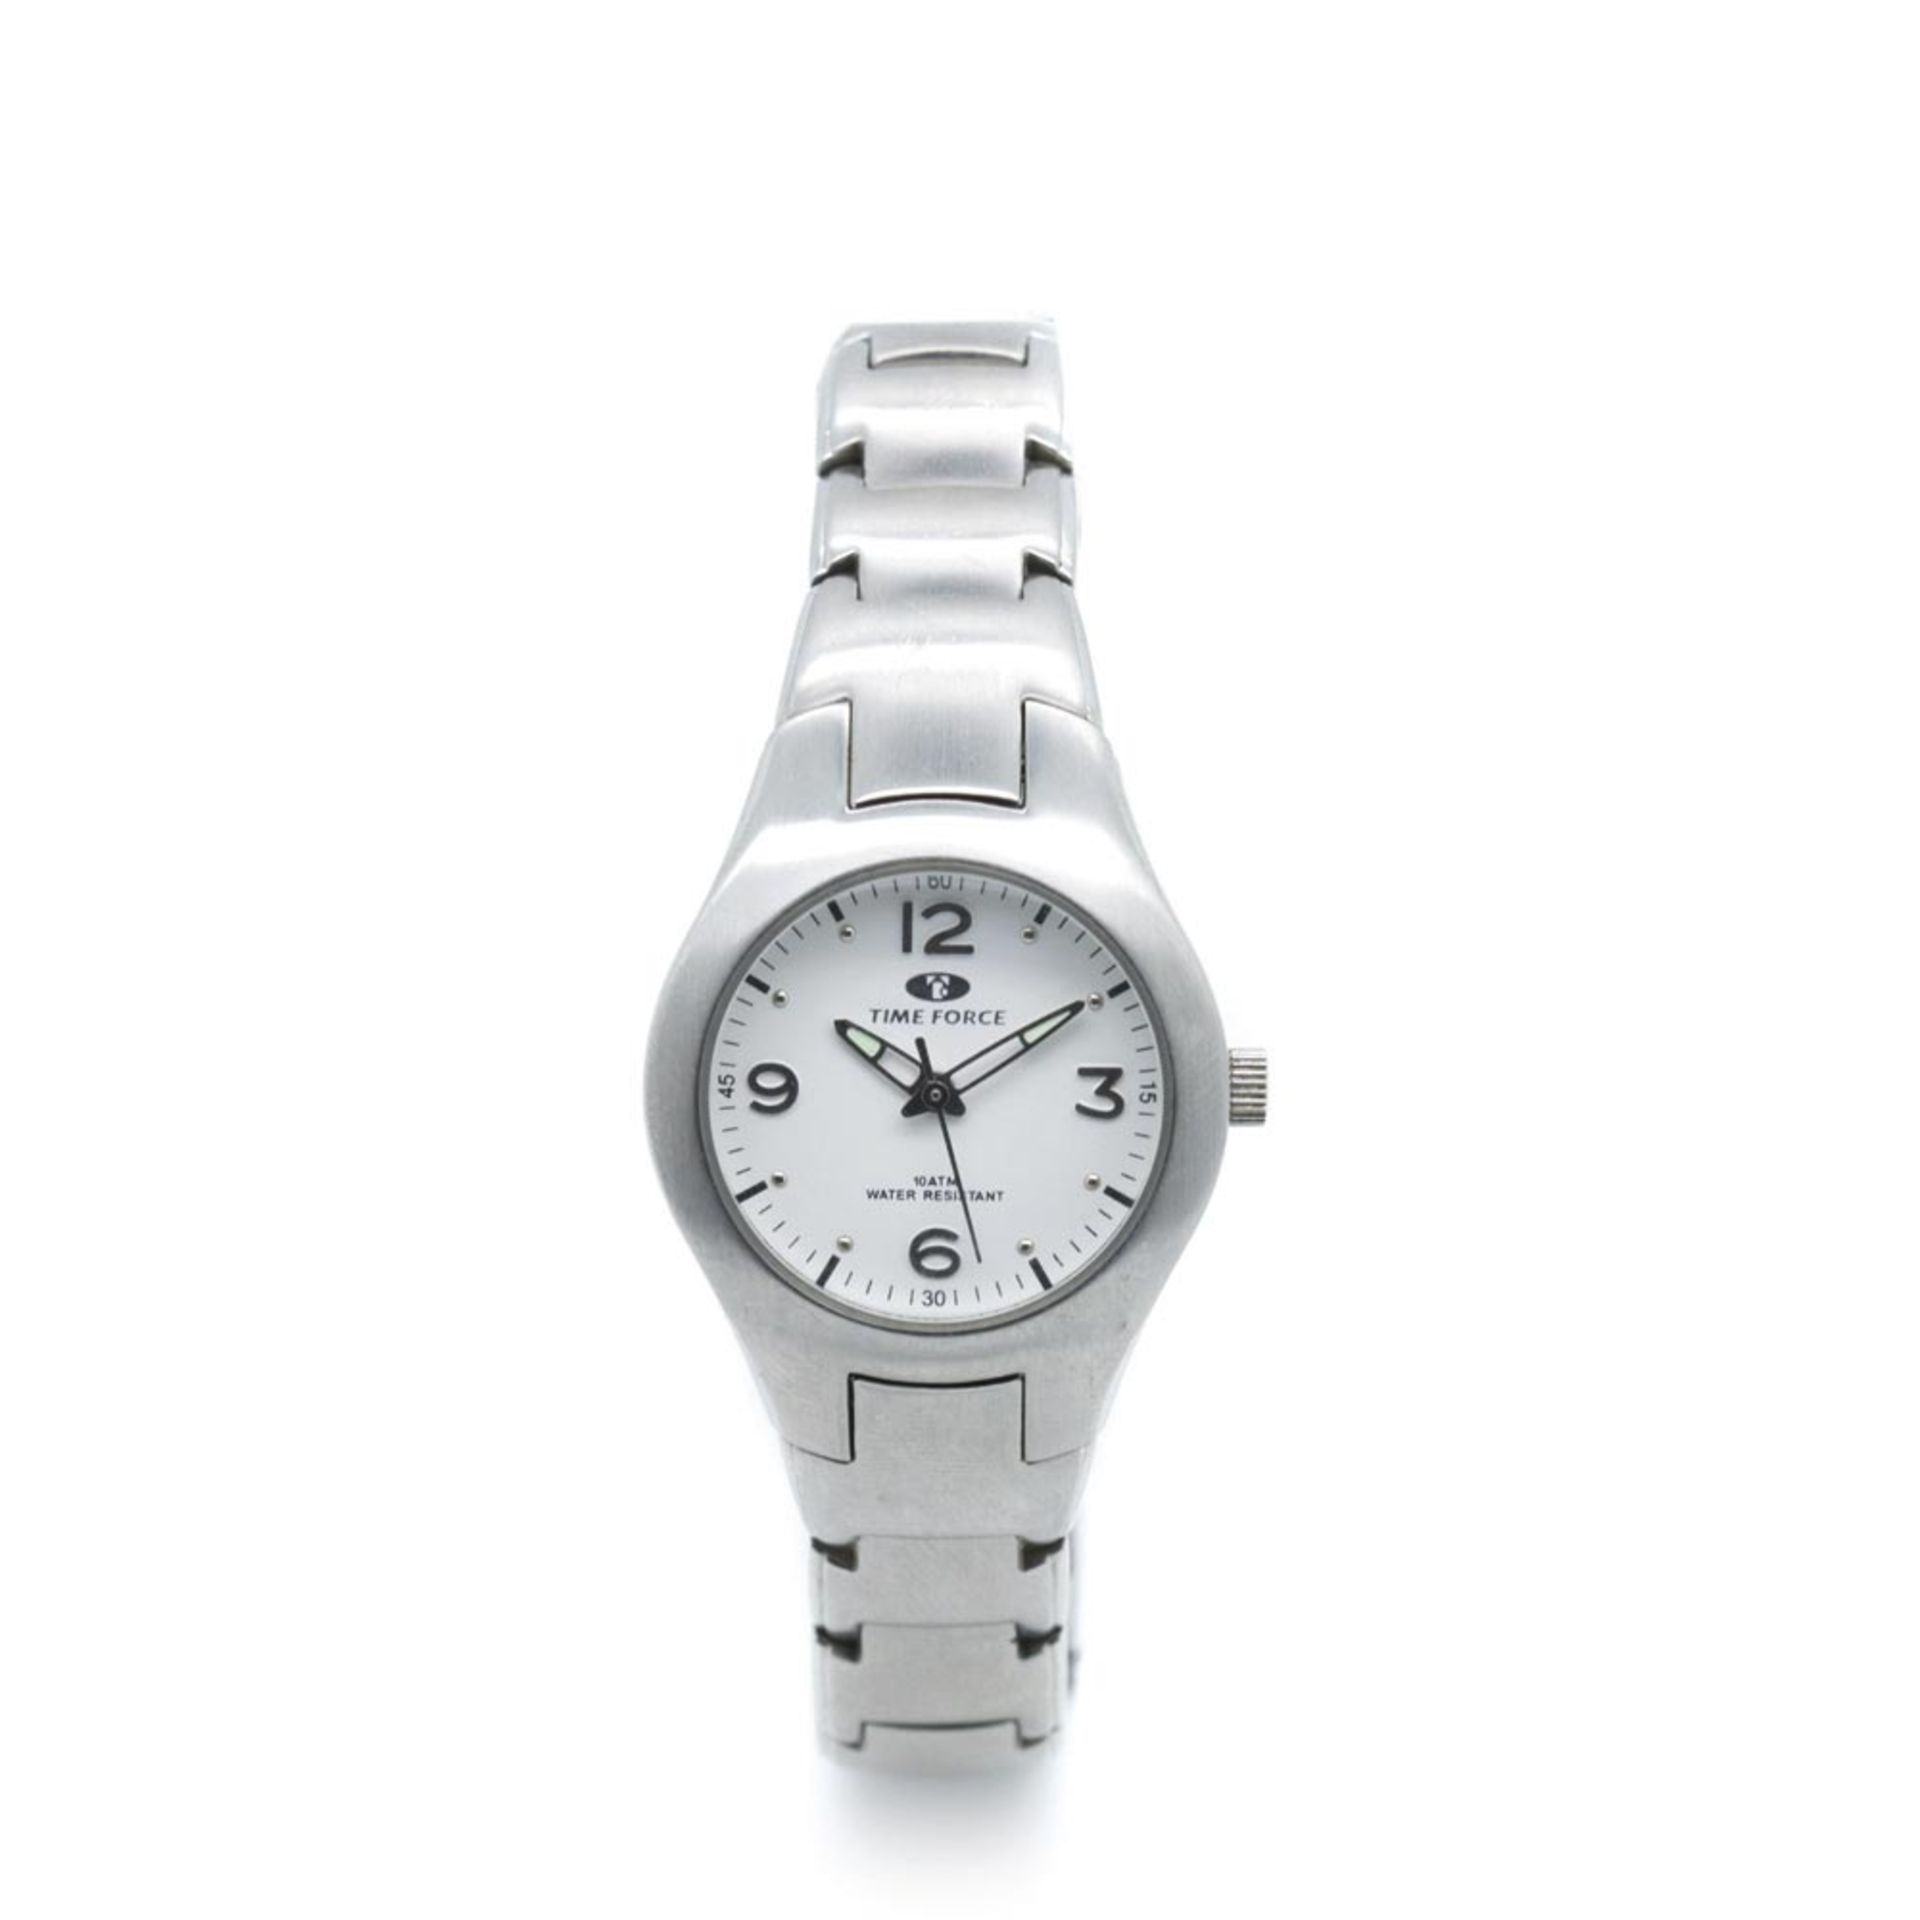 Time Force steel wristwatch